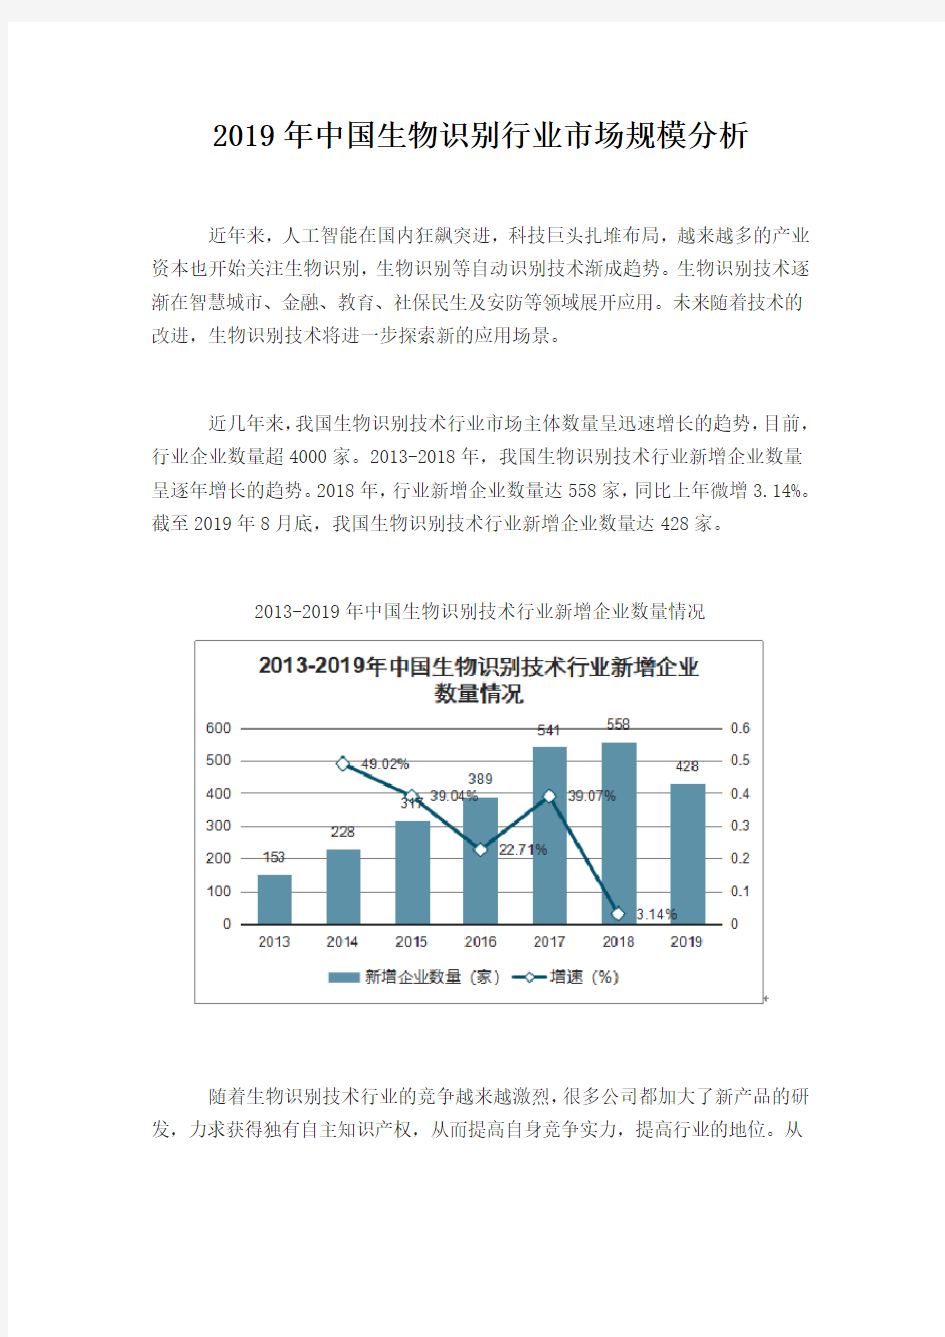 中国生物识别行业市场规模分析